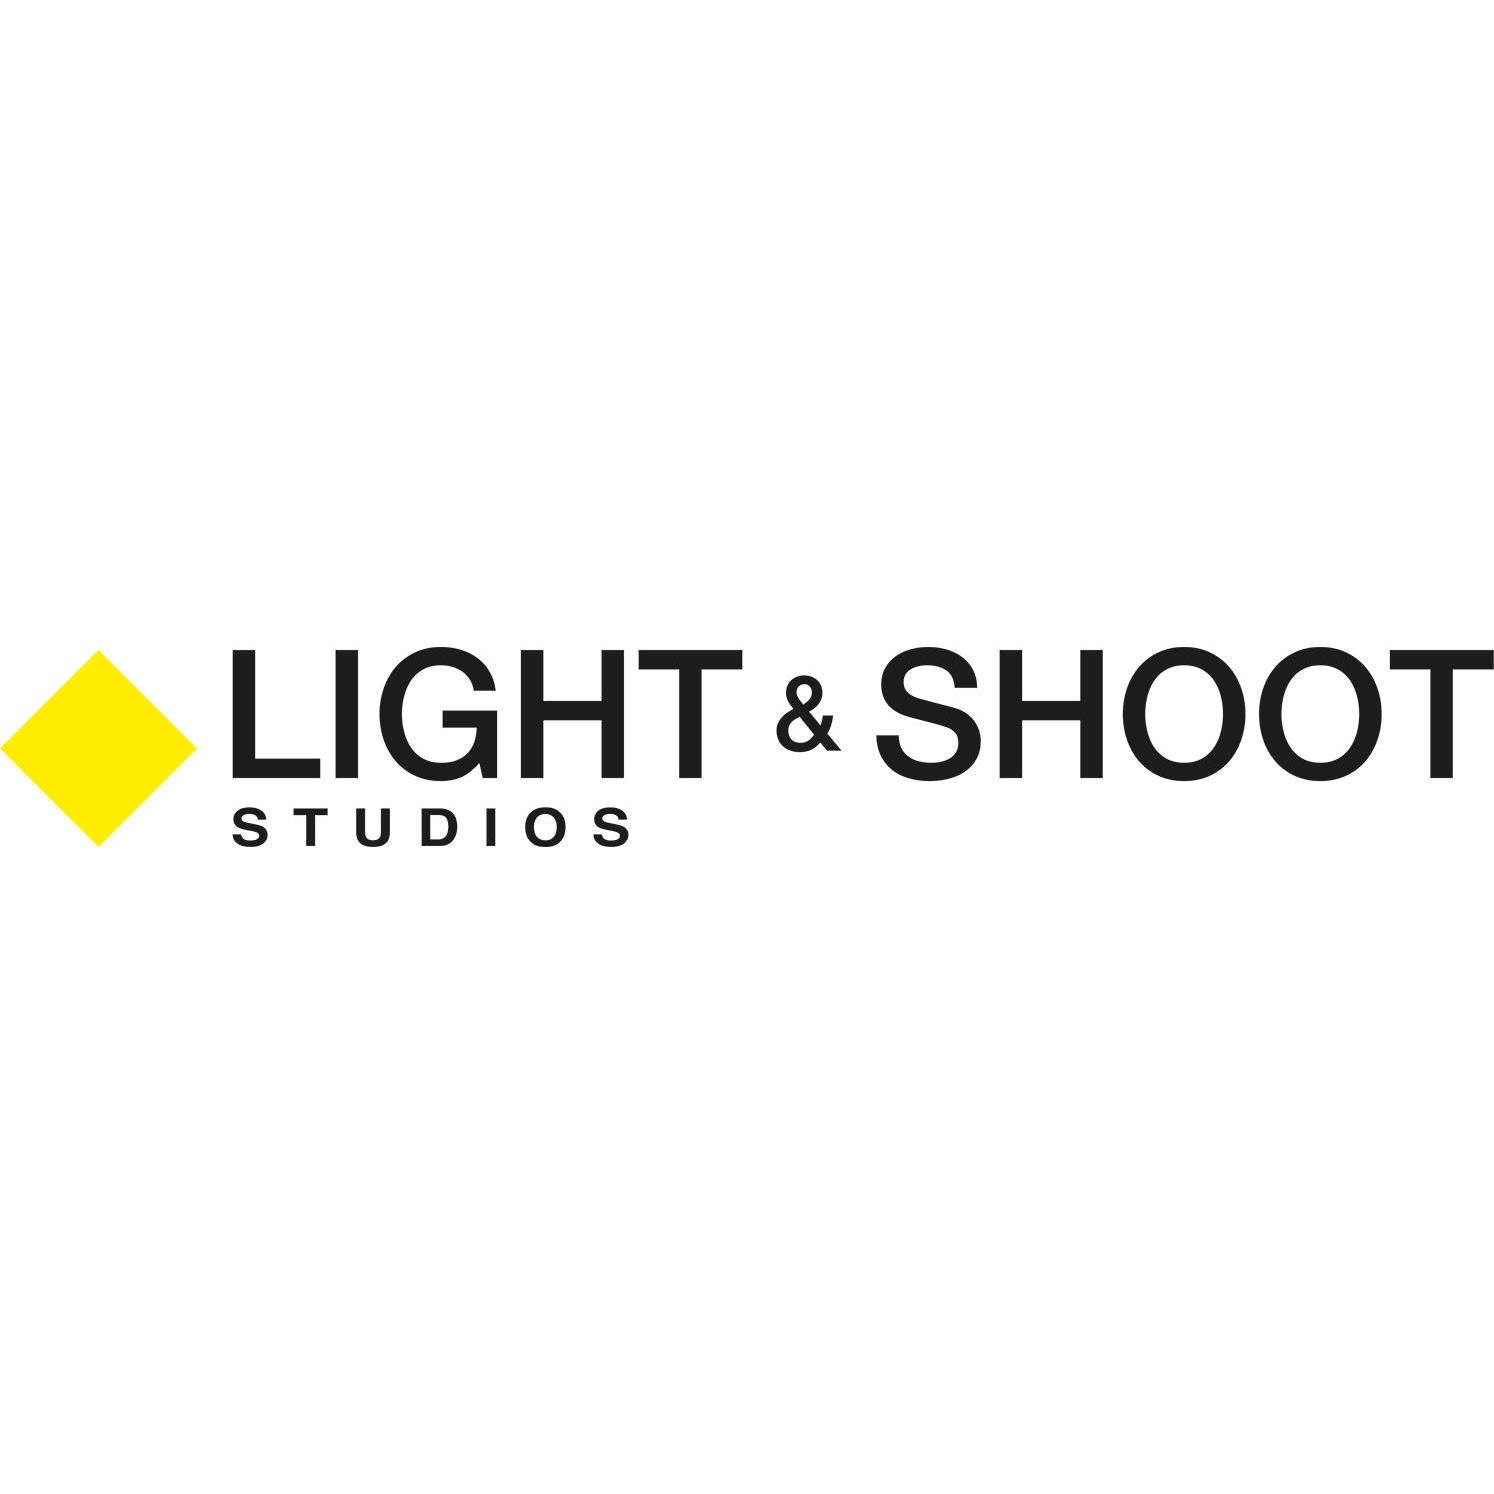 Light & Shoot Studios Xàtiva